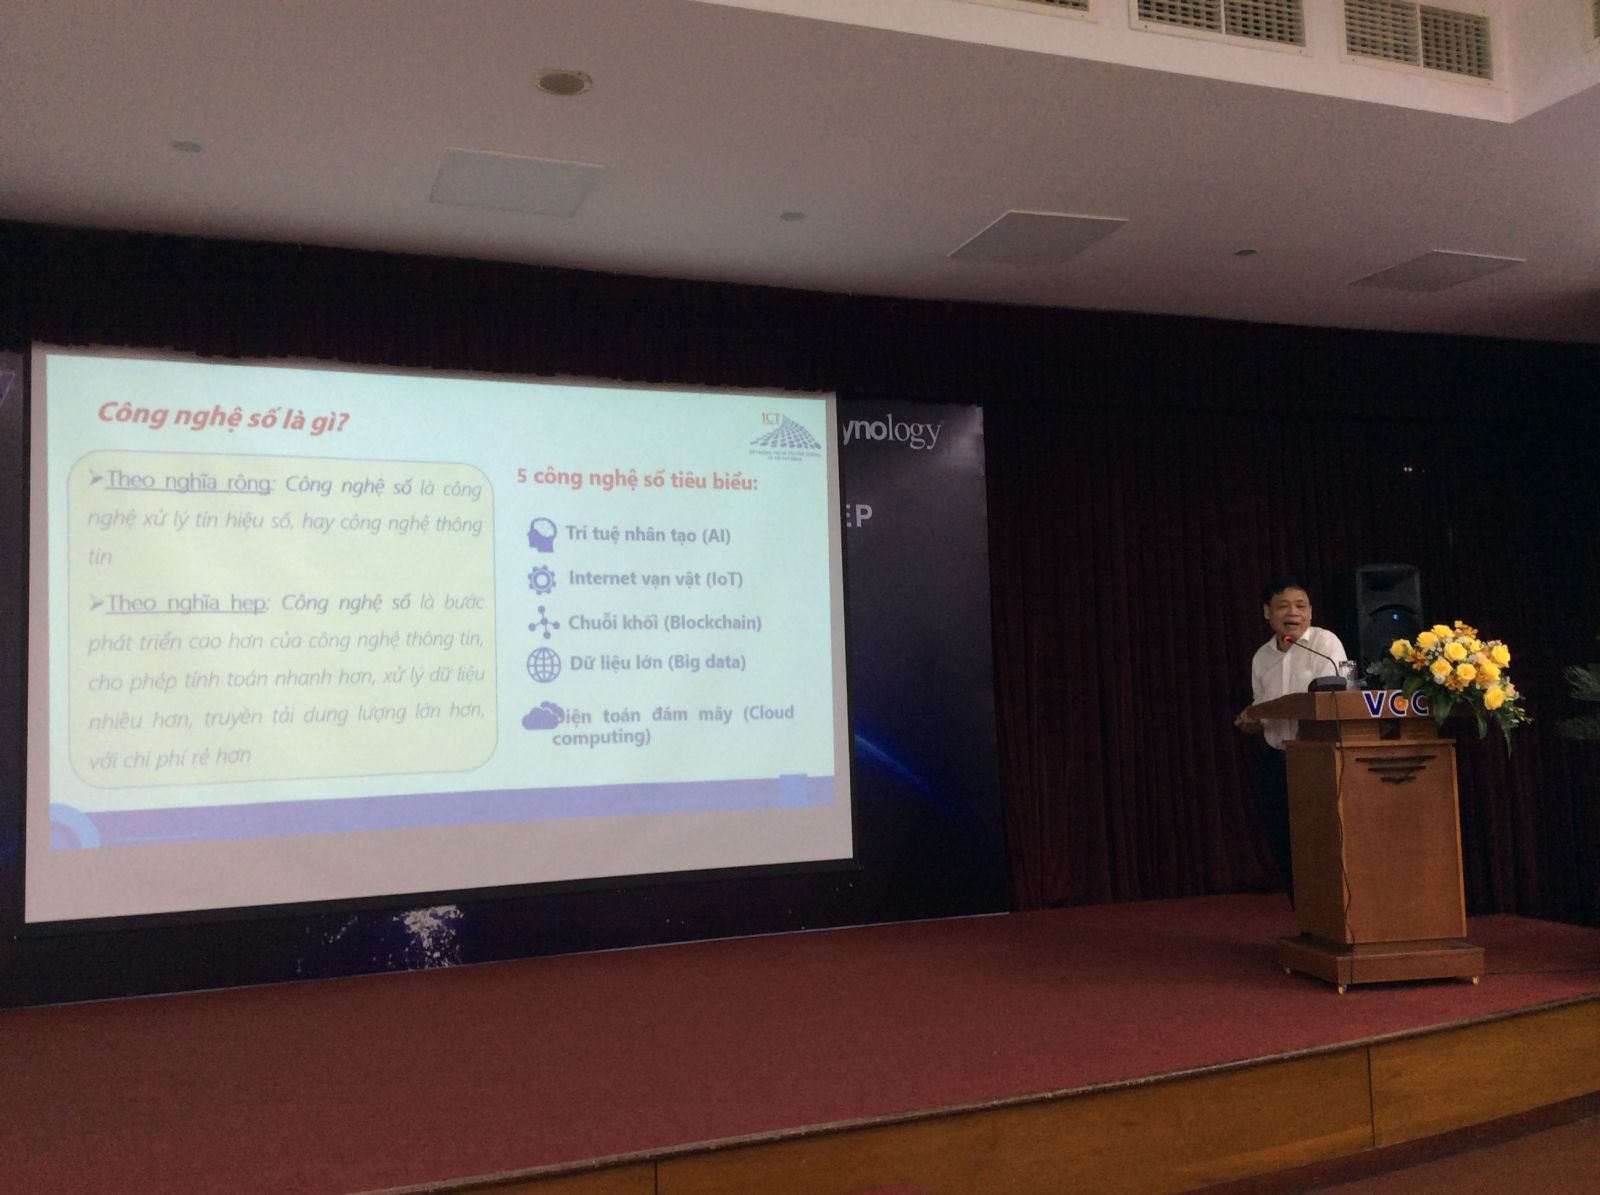 Ông Lê Quốc Cường, Phó trưởng ban quản lý Khu Công nghệ cao TP. HCM trình bày tham luận